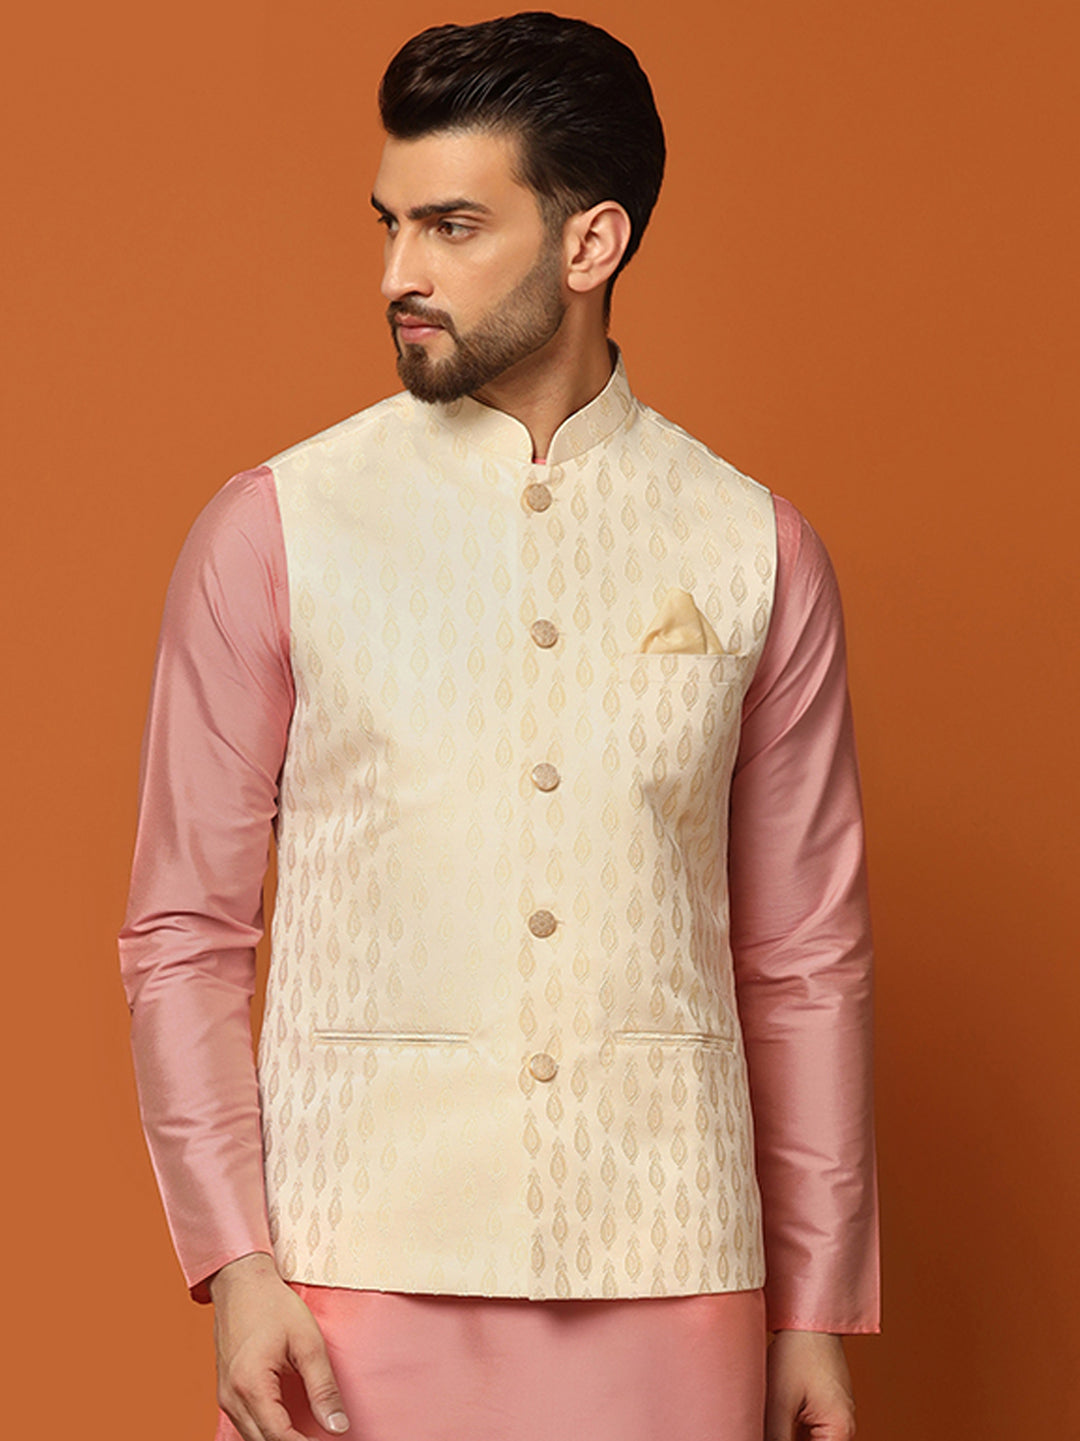 Buy KISAH Men's Nehru Jacket, Yellow Cotton Blend, Printed Regular Fit  Mandarin Collar Sleeveless (S) at Amazon.in